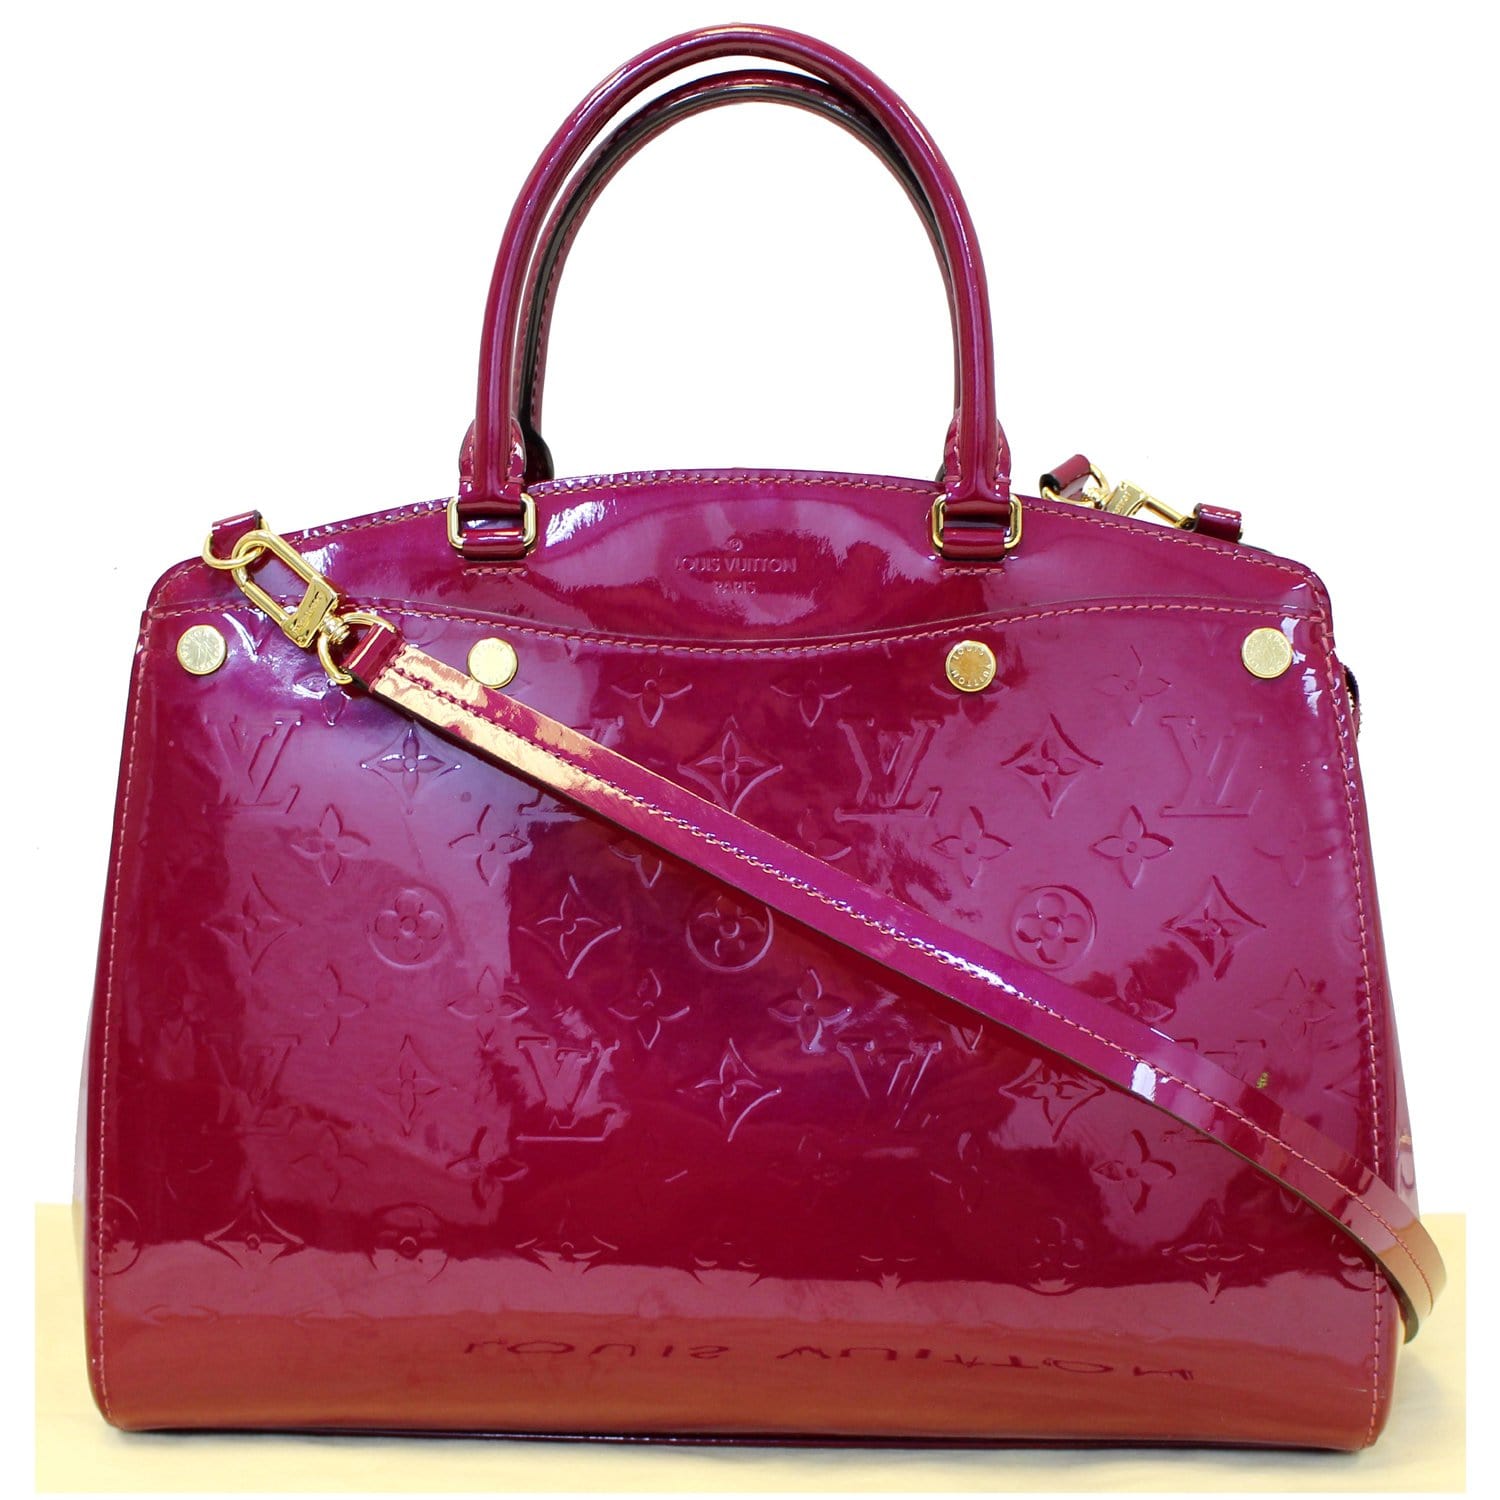 Louis Vuitton Brea mm Bag